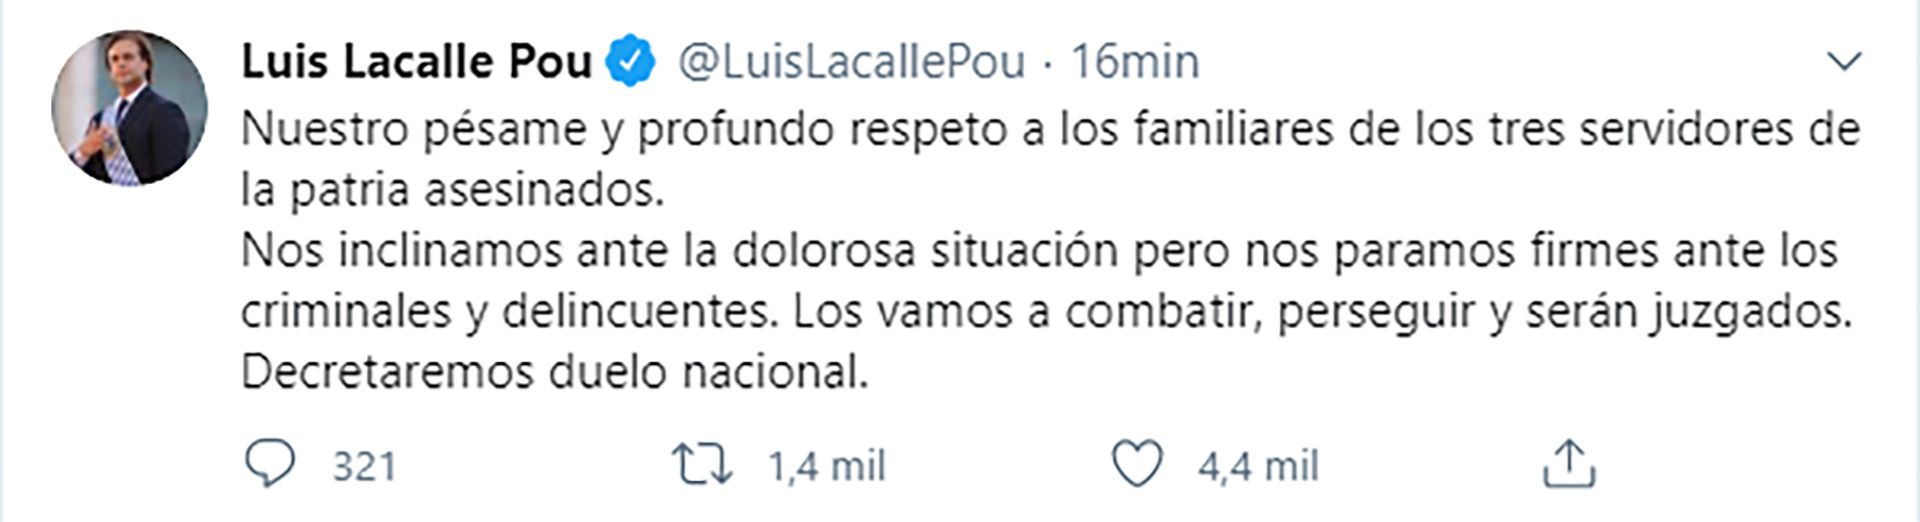 Luis Lacalle Pou tuit